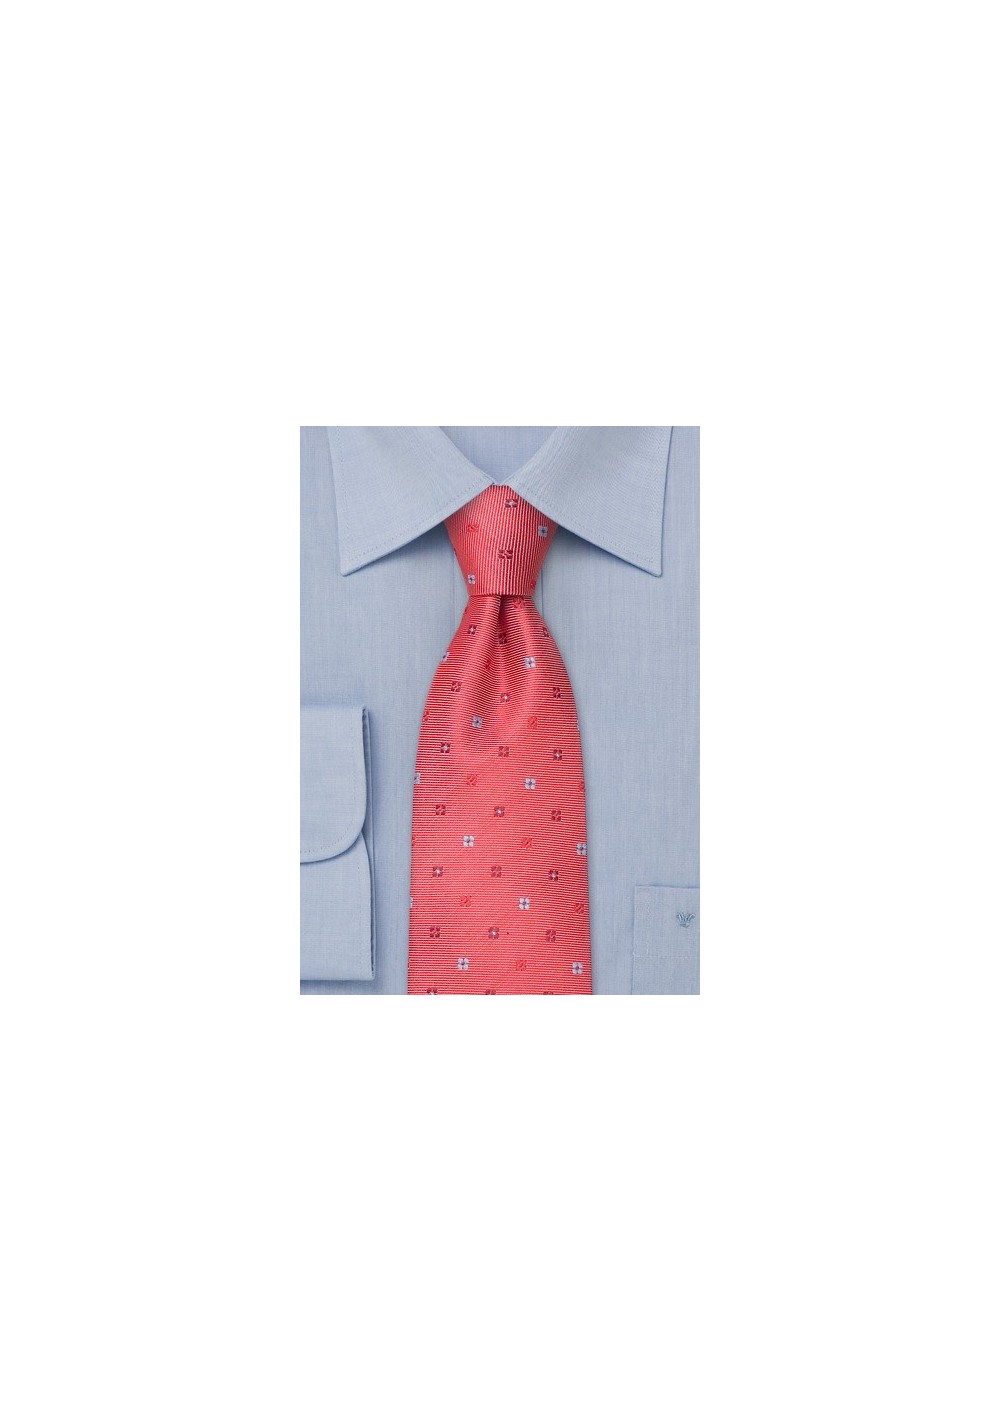 Coral red necktie  -  Handmade silk tie with flower pattern